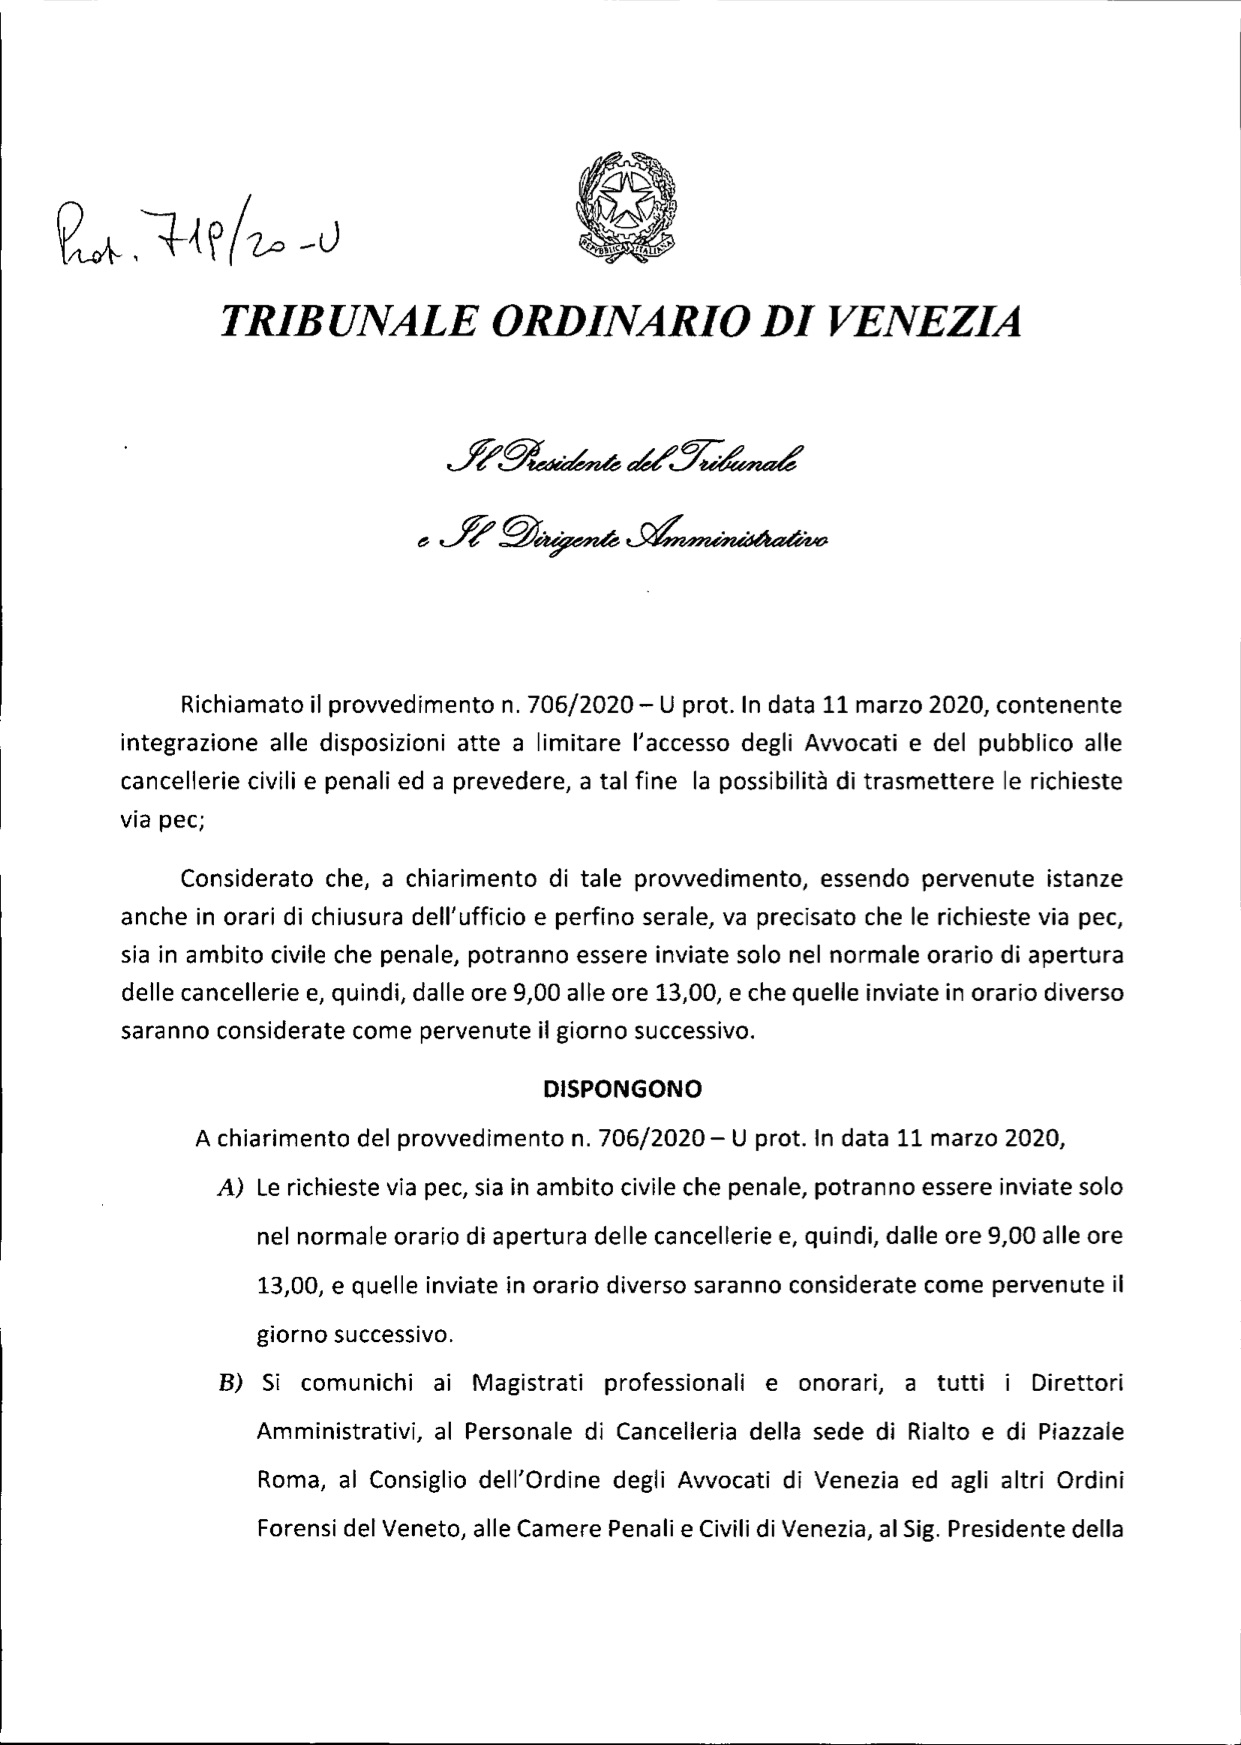 nota del Presidente Tribunale di Venezia prot. 719-20 a chiarimento della  nota prot. 70620-U  integrativa del 12.02.2020.